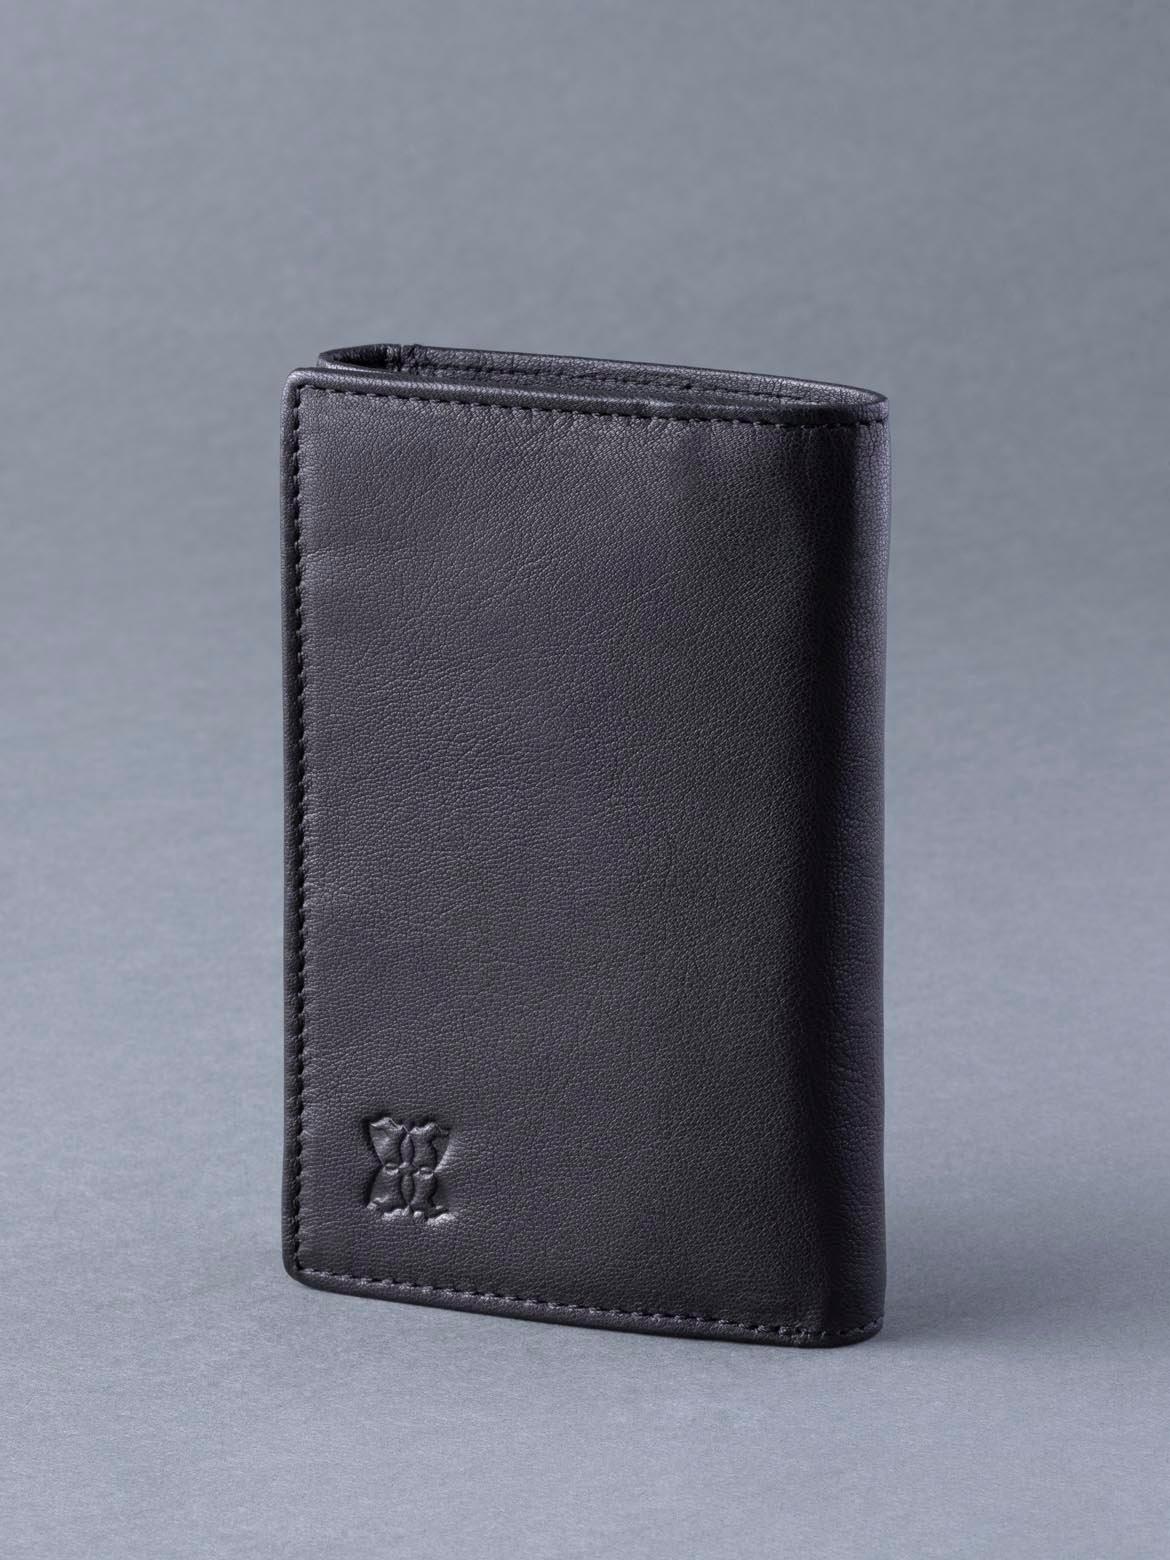 Кожаный кошелек в три сложения 'Bowston' Lakeland Leather, черный кошелек oxmox leather querscheinbörse 6cc 12 cm rfid цвет lizard